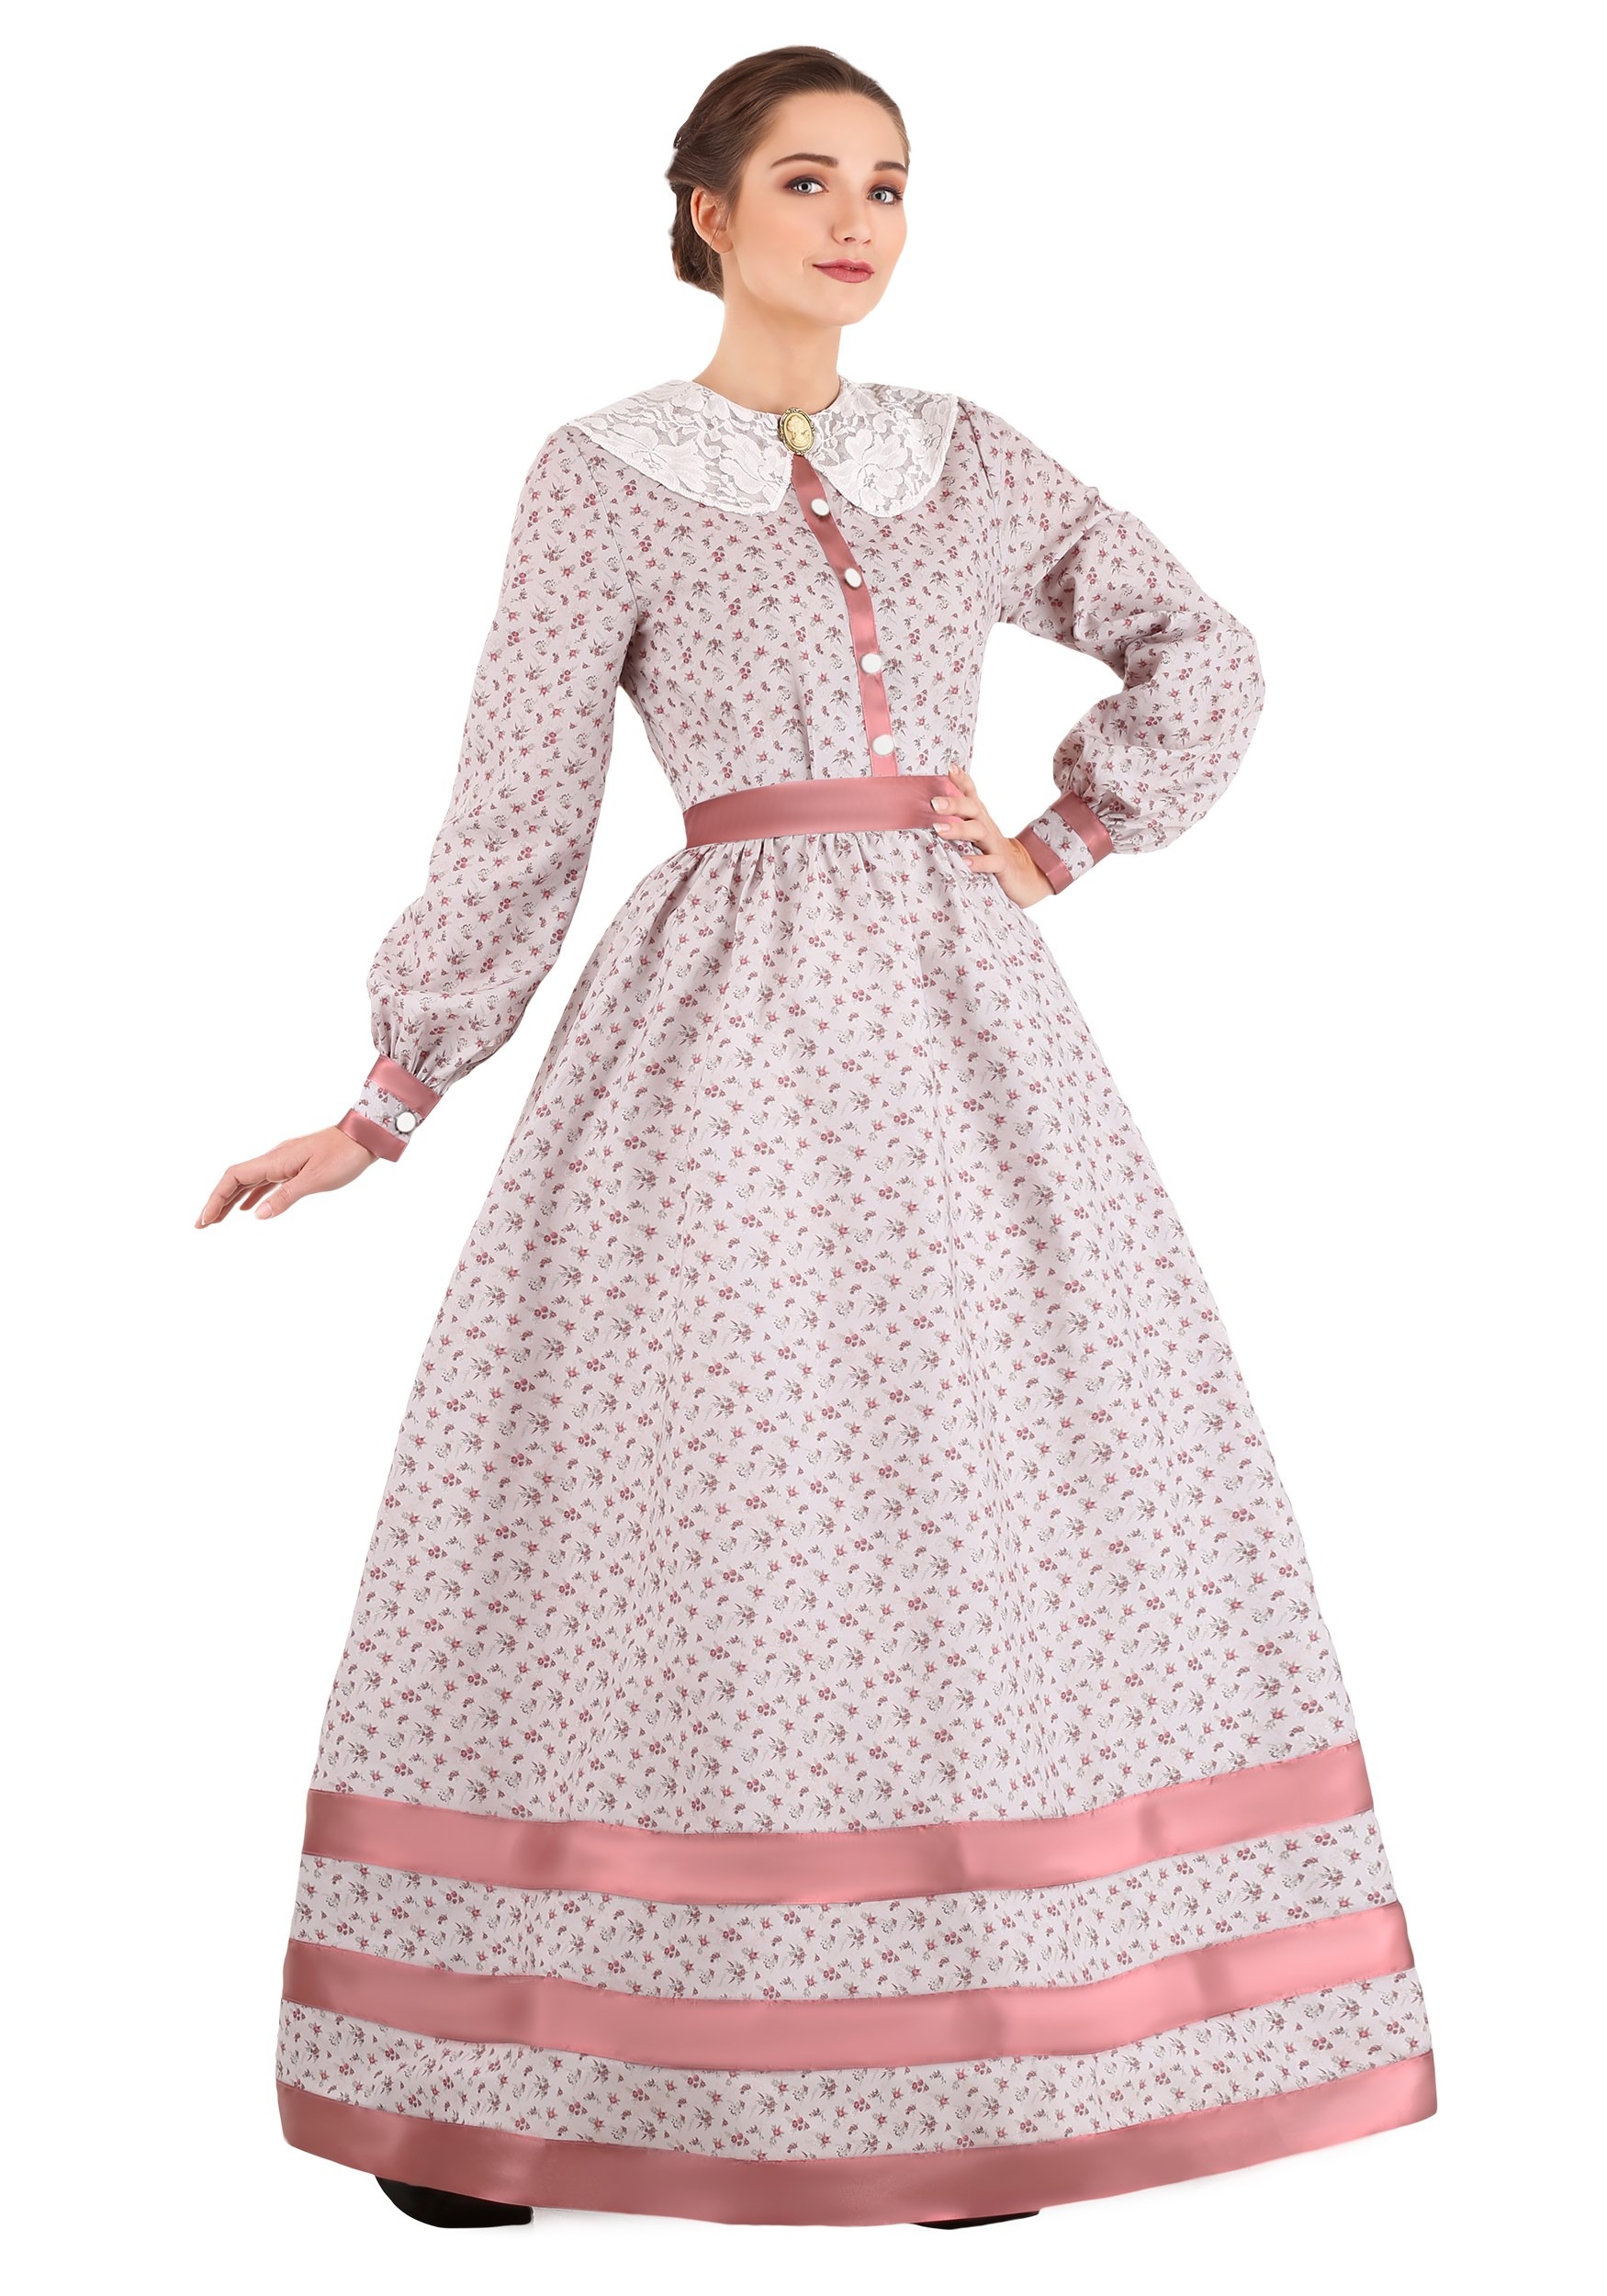 Southern Belle Dresses, Southern Belle Costumes & Patterns Civil War Dress Costume for Women $59.99 AT vintagedancer.com